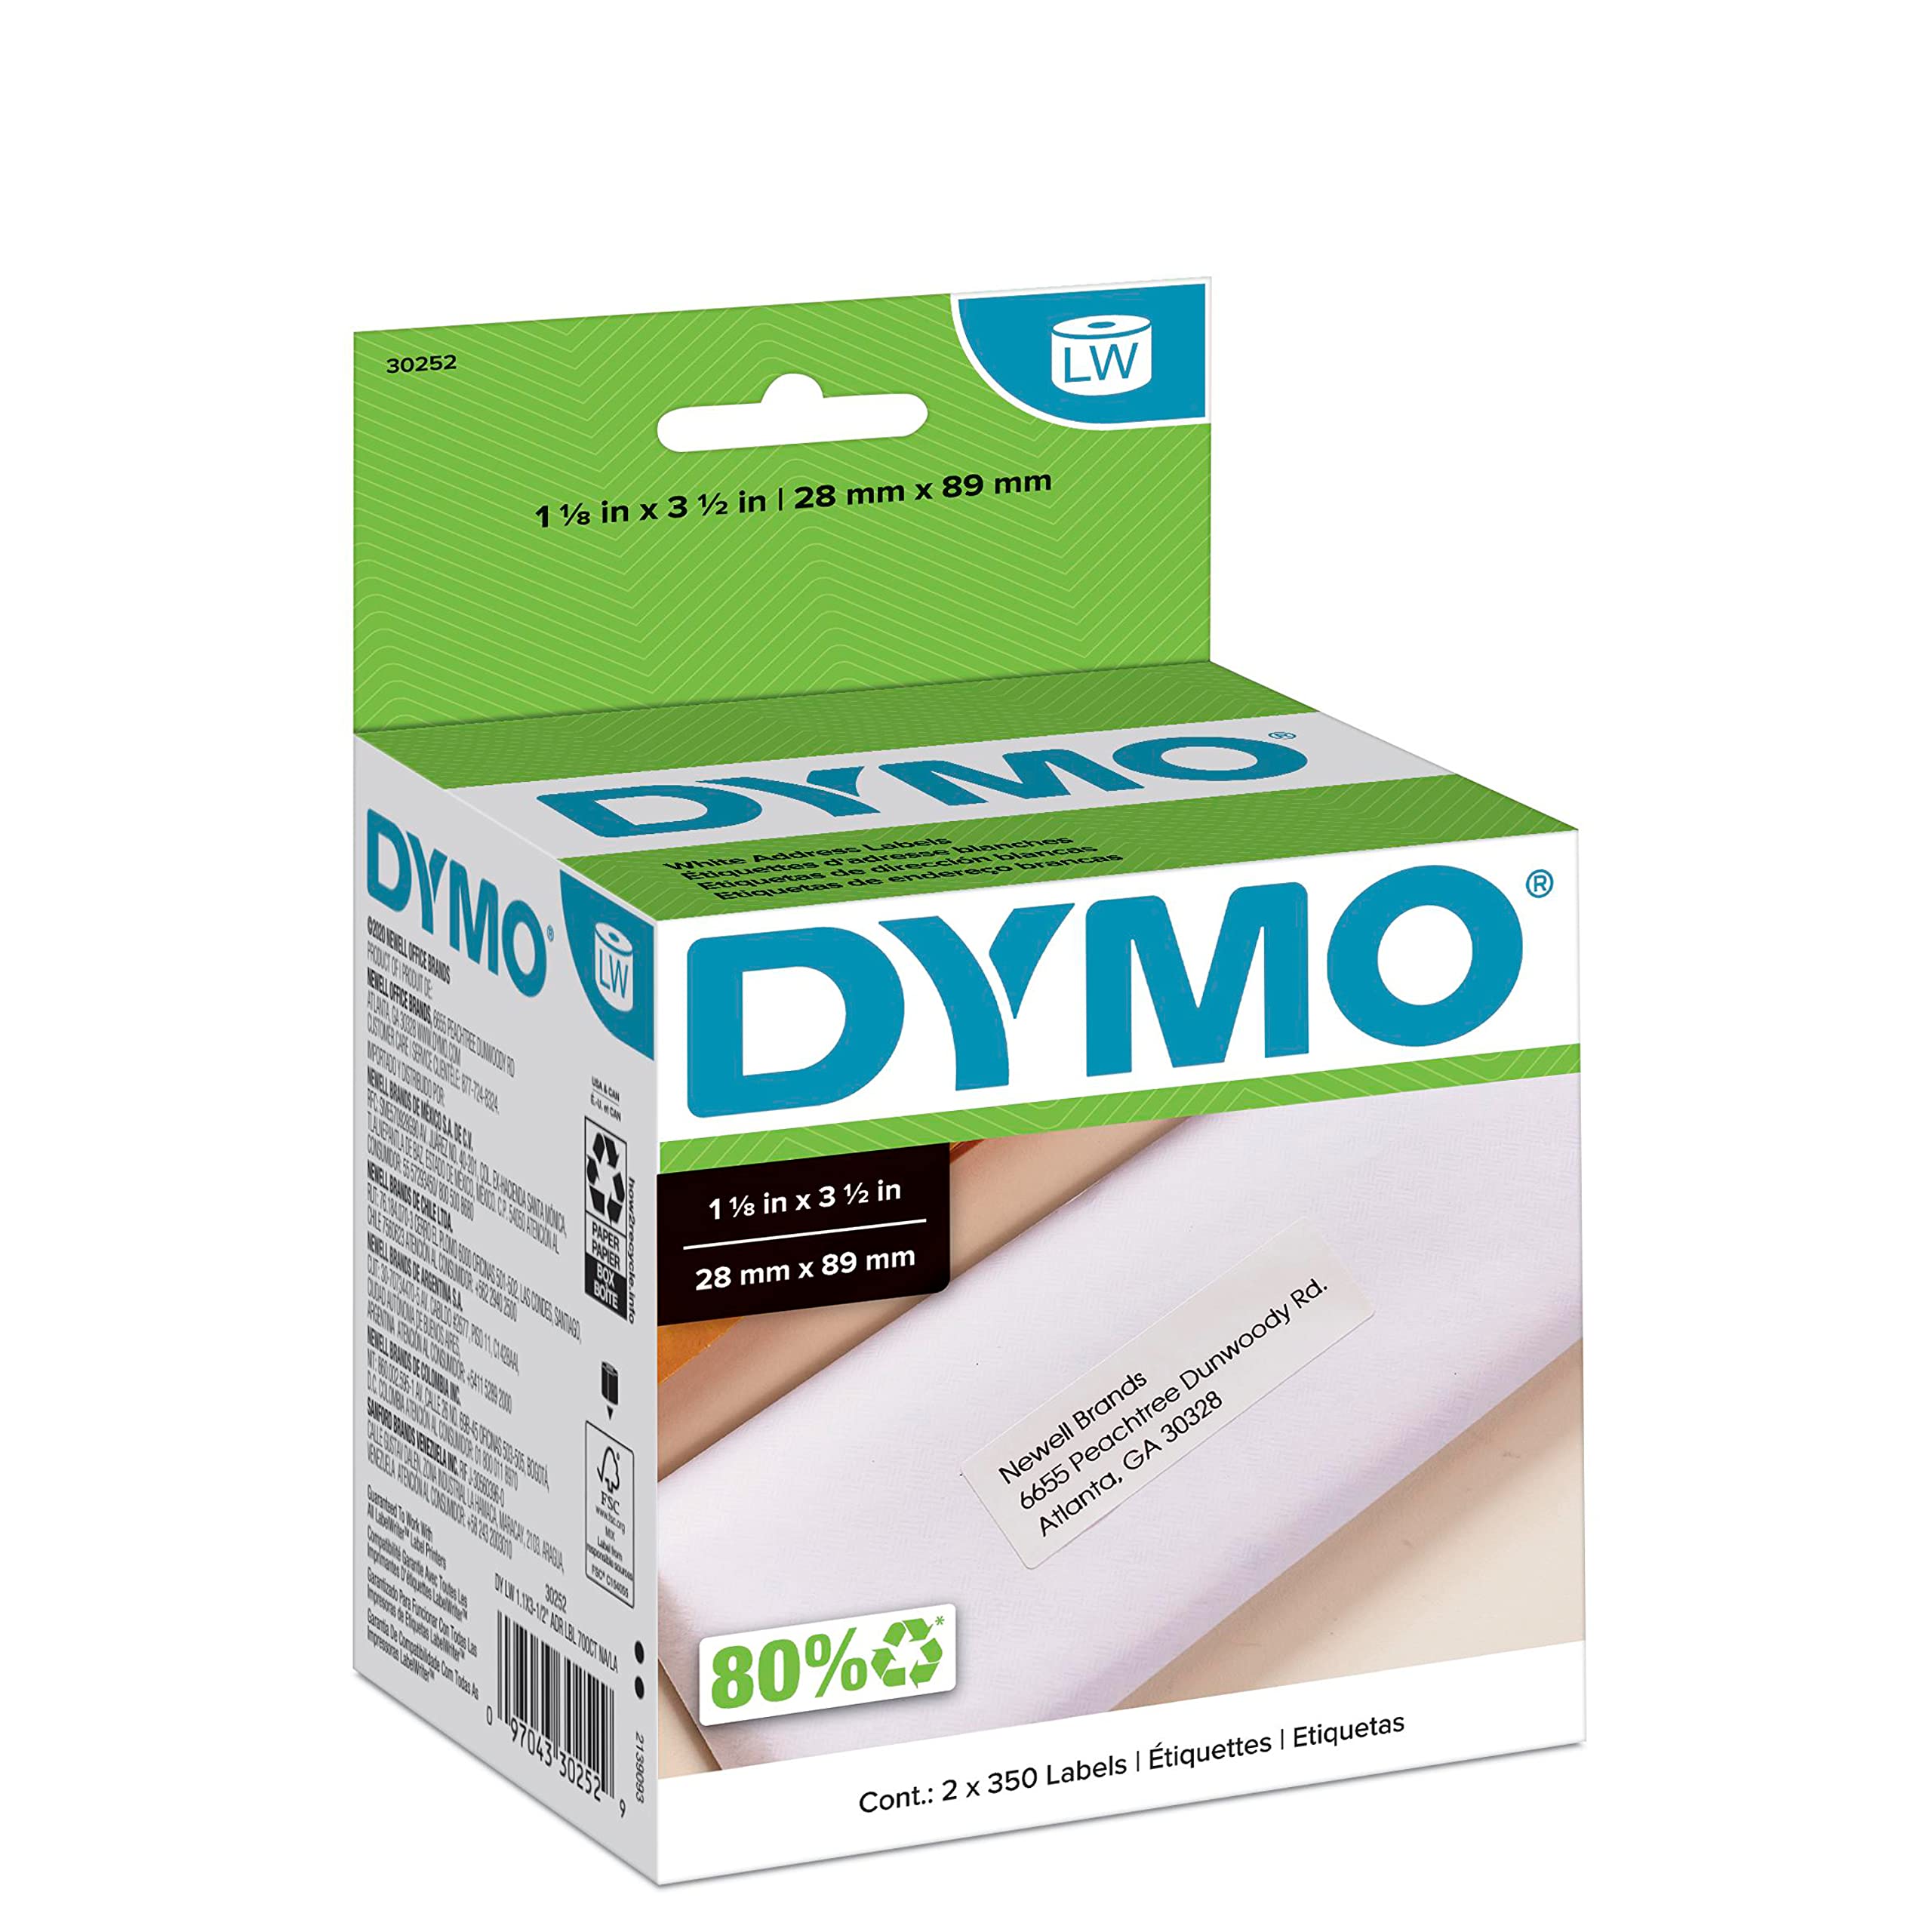 DYMO Etiquetas de dirección postal LW auténticas para impresoras de etiquetas LabelWriter